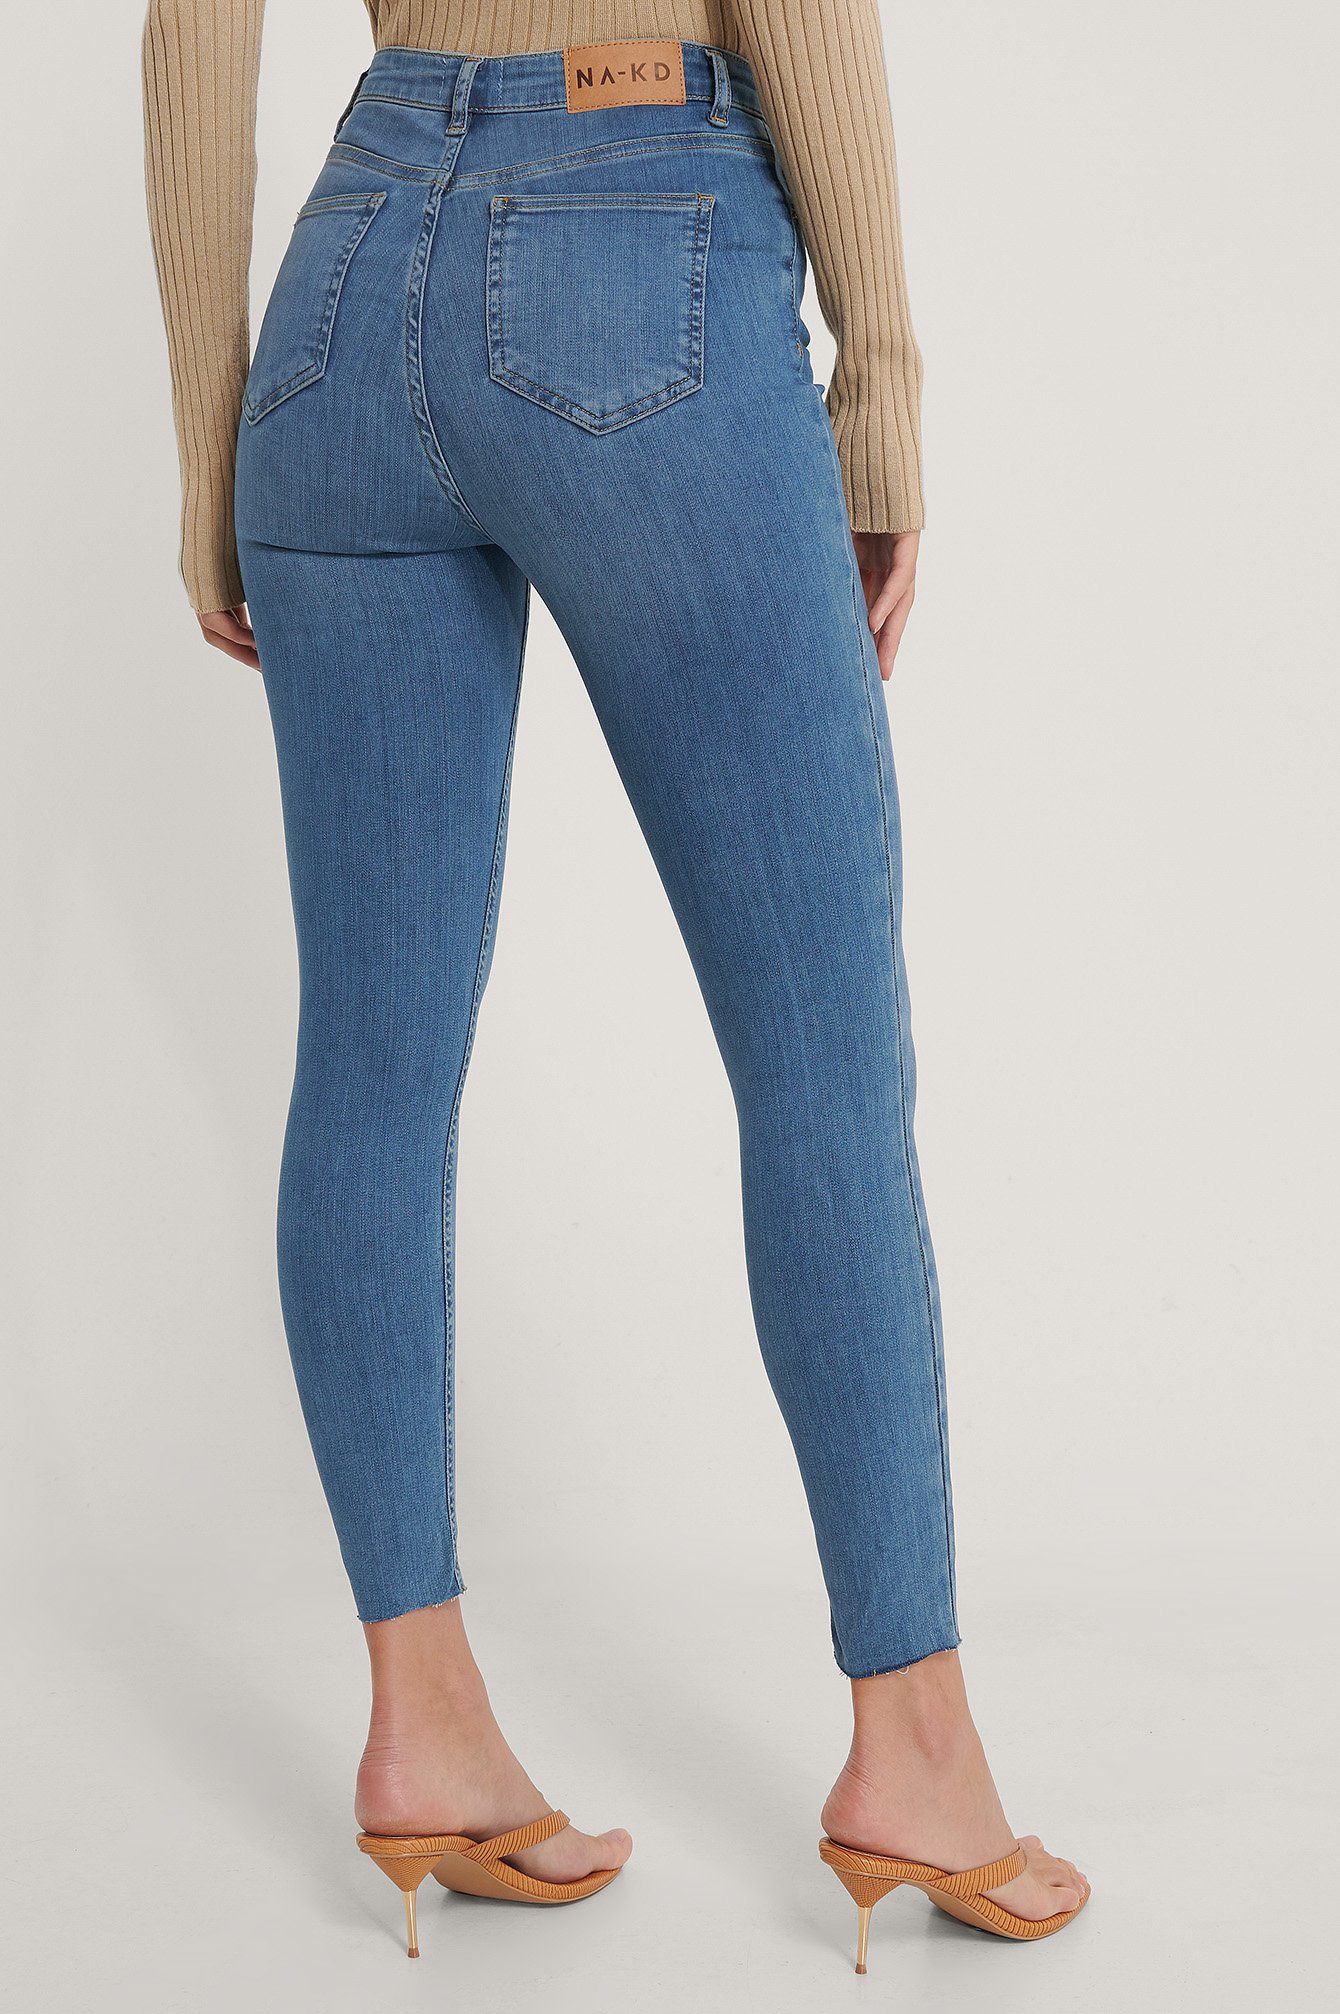 die NA-KD Taille auf modisches ein Hoch – | Jeans High-Waist